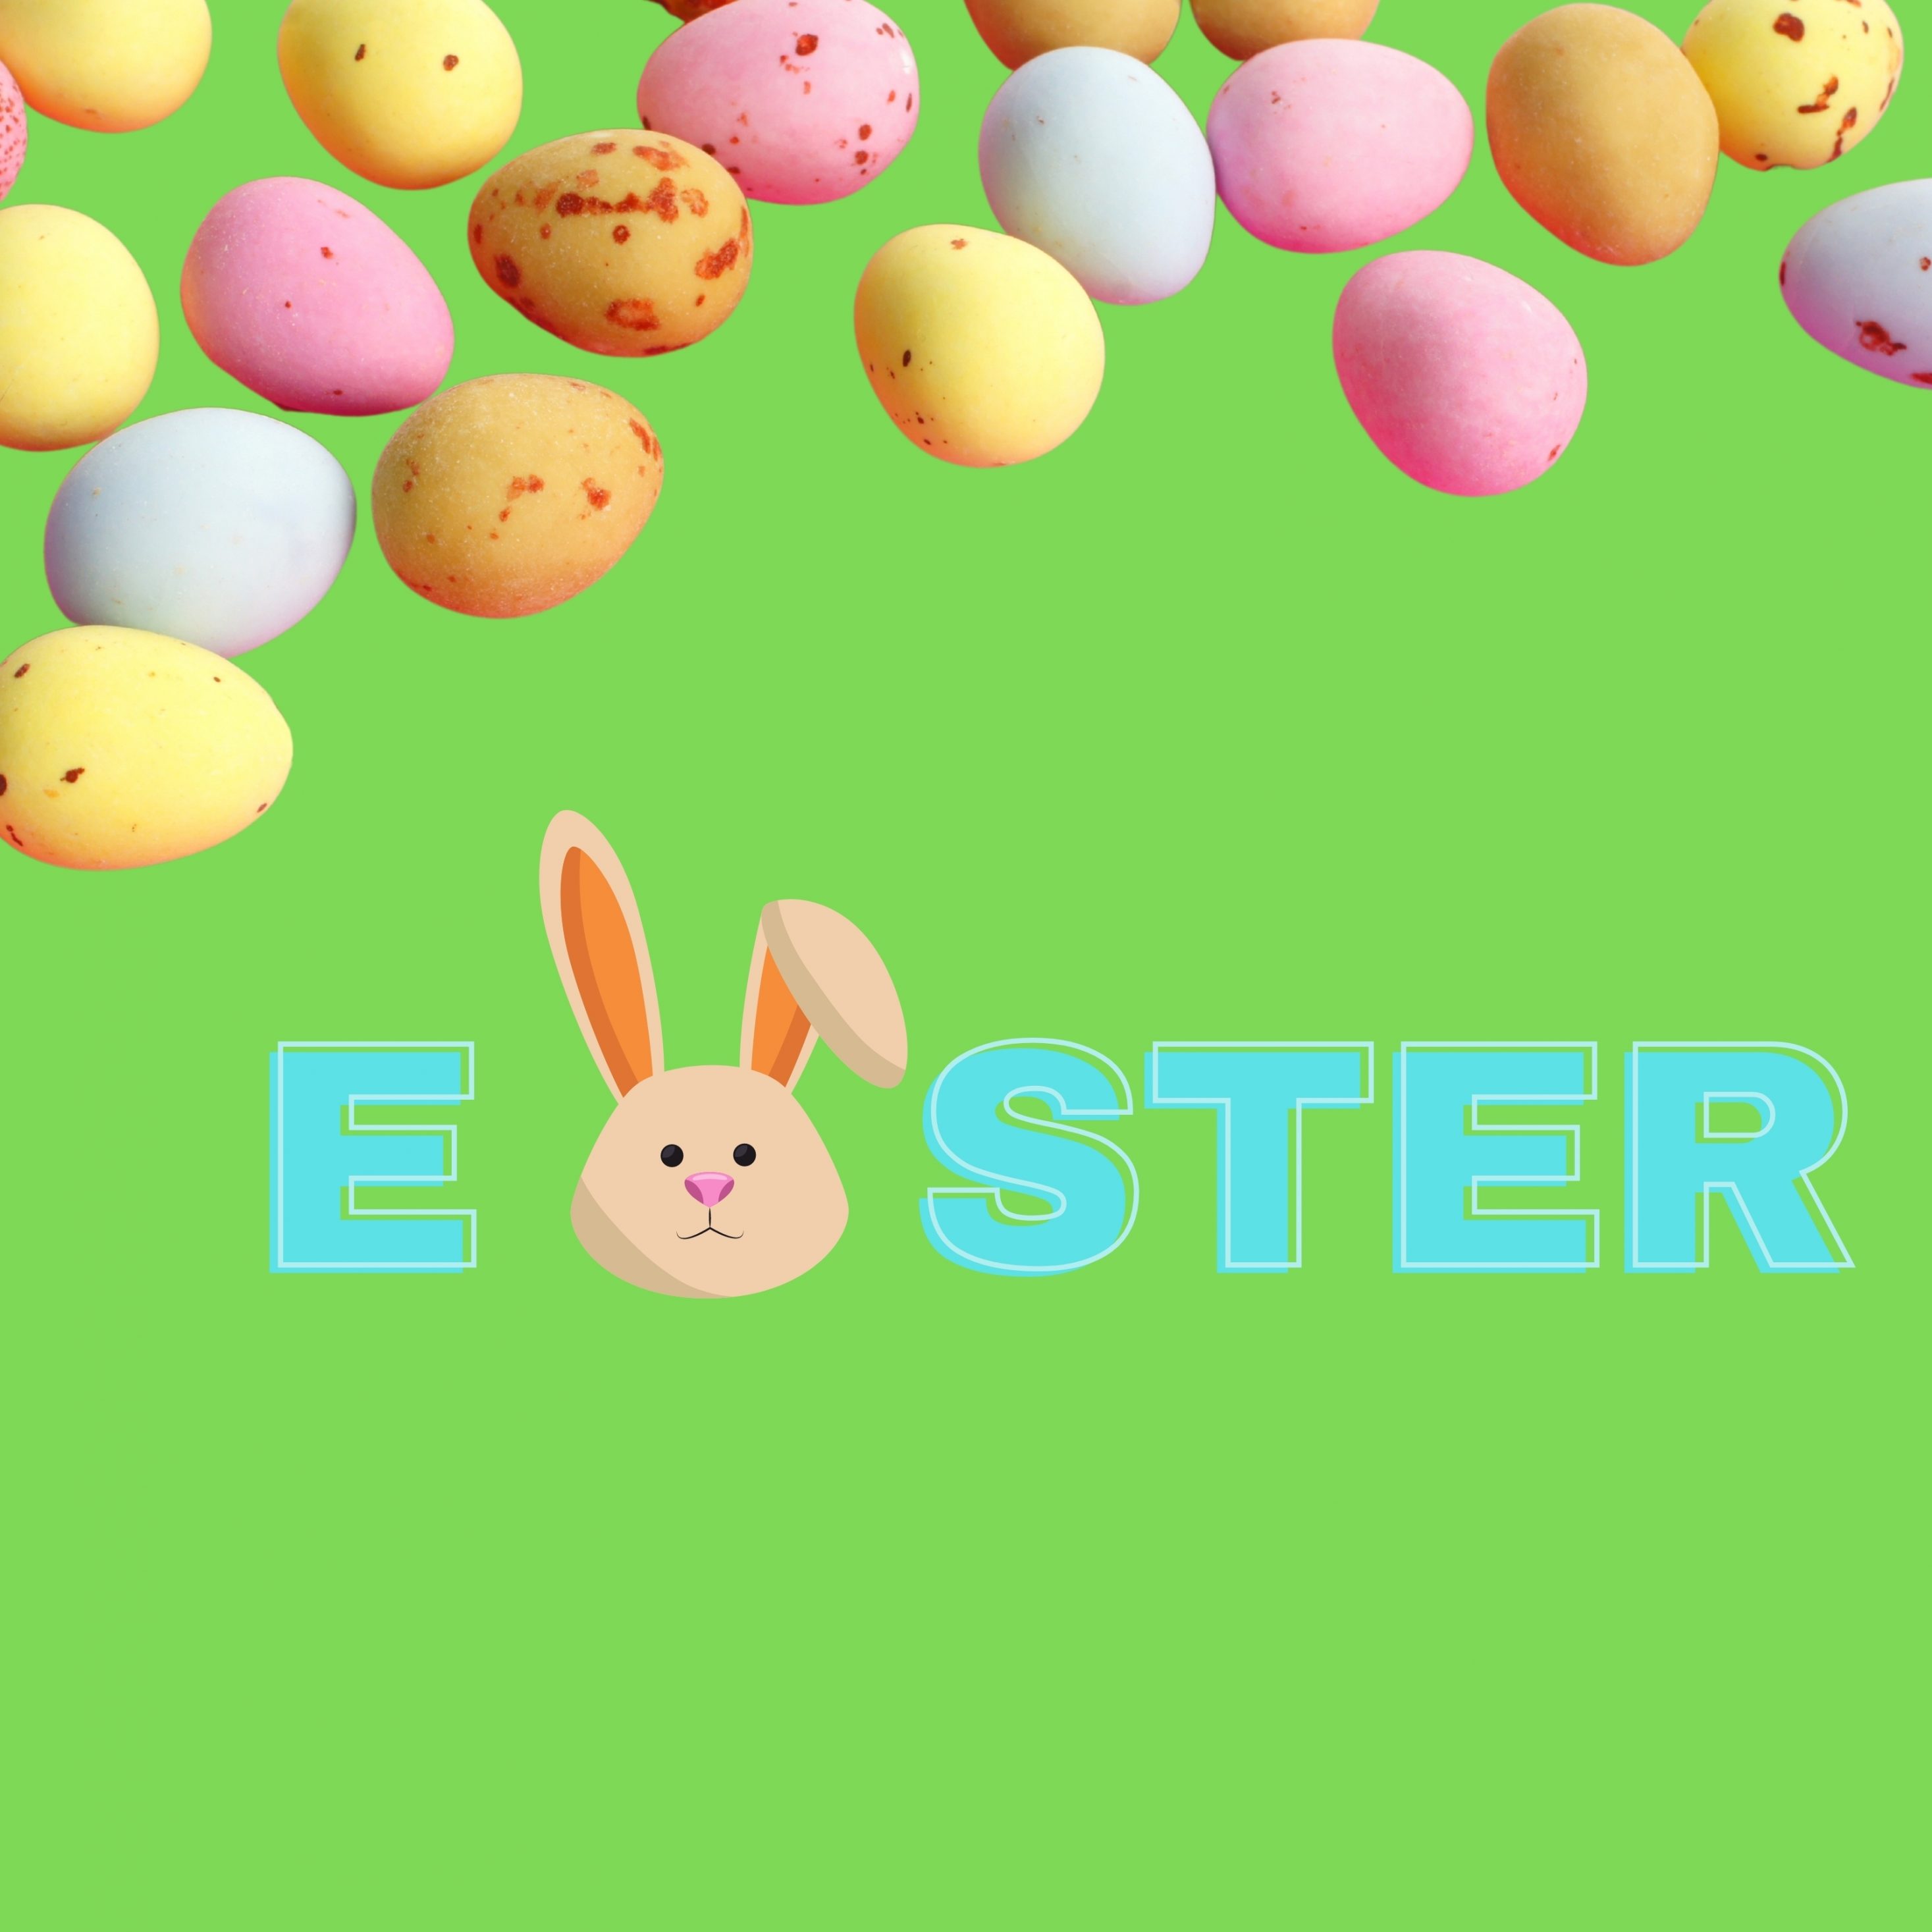 2934x2934 iOS iPad wallpaper 4k Eater Bunny Eggs iPad Wallpaper 2934x2934 pixels resolution